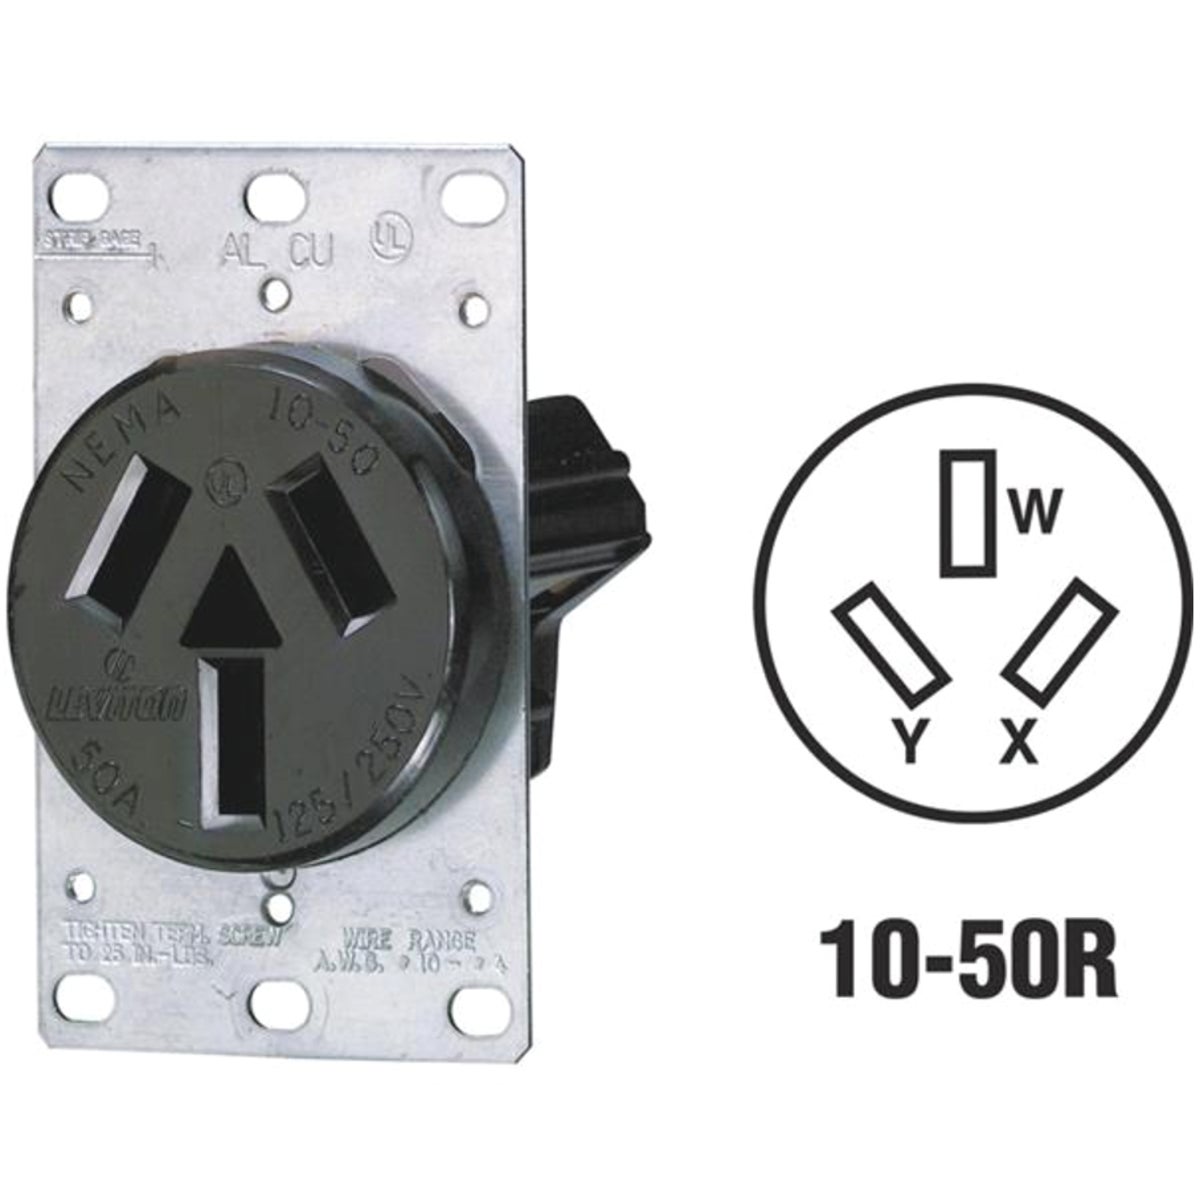 Item 502283, Range power outlet. Accepts aluminum or copper conductors.